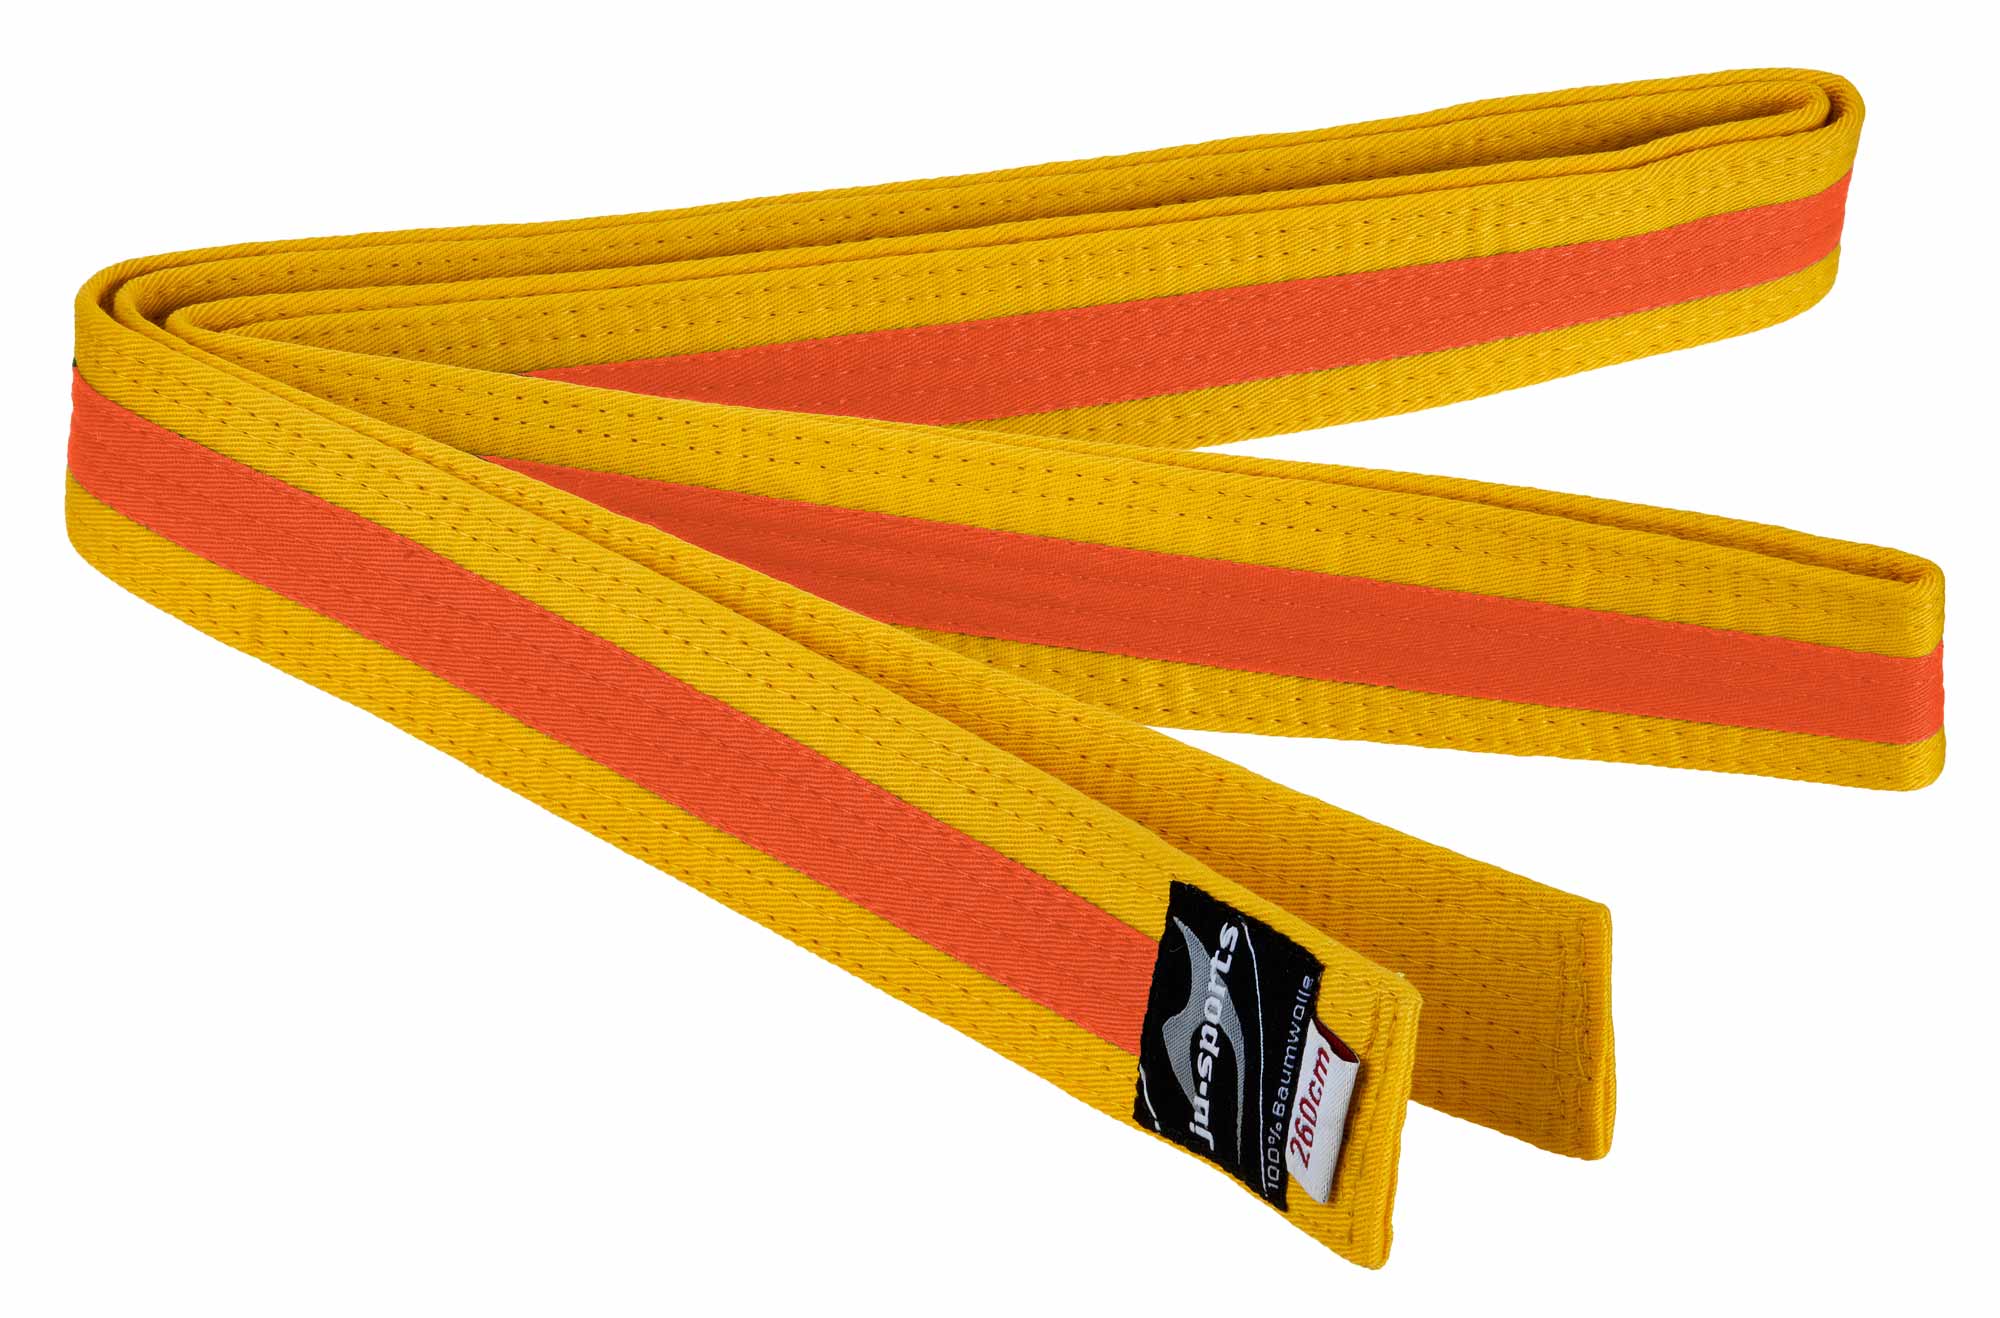 Ju-Sports budo belt yellow/orange/yellow